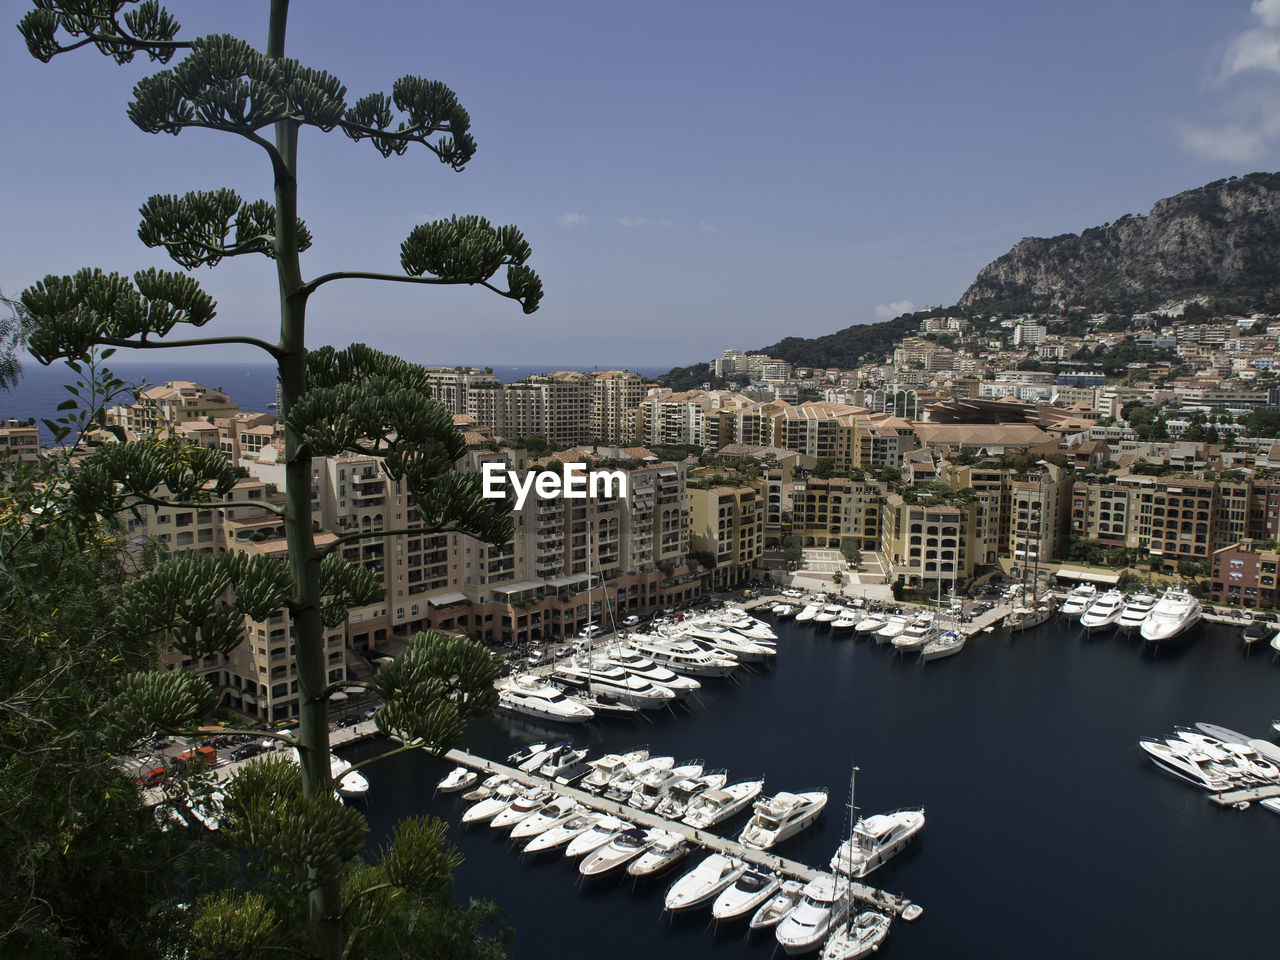 Monaco city